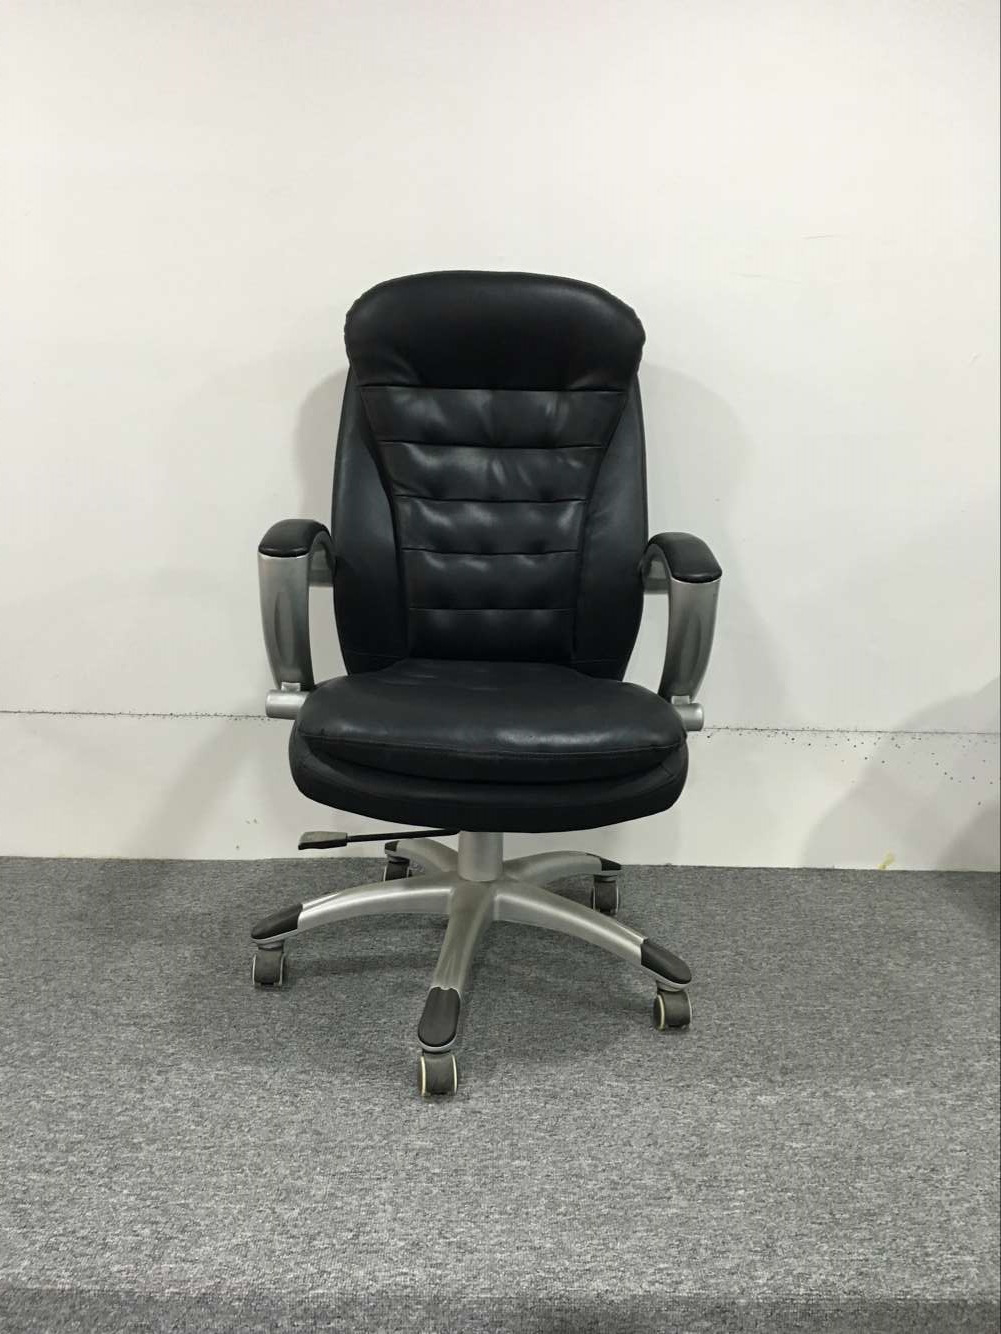 厂家直销电脑椅家用 时尚经理椅 办公椅 升降椅  健康椅 6010